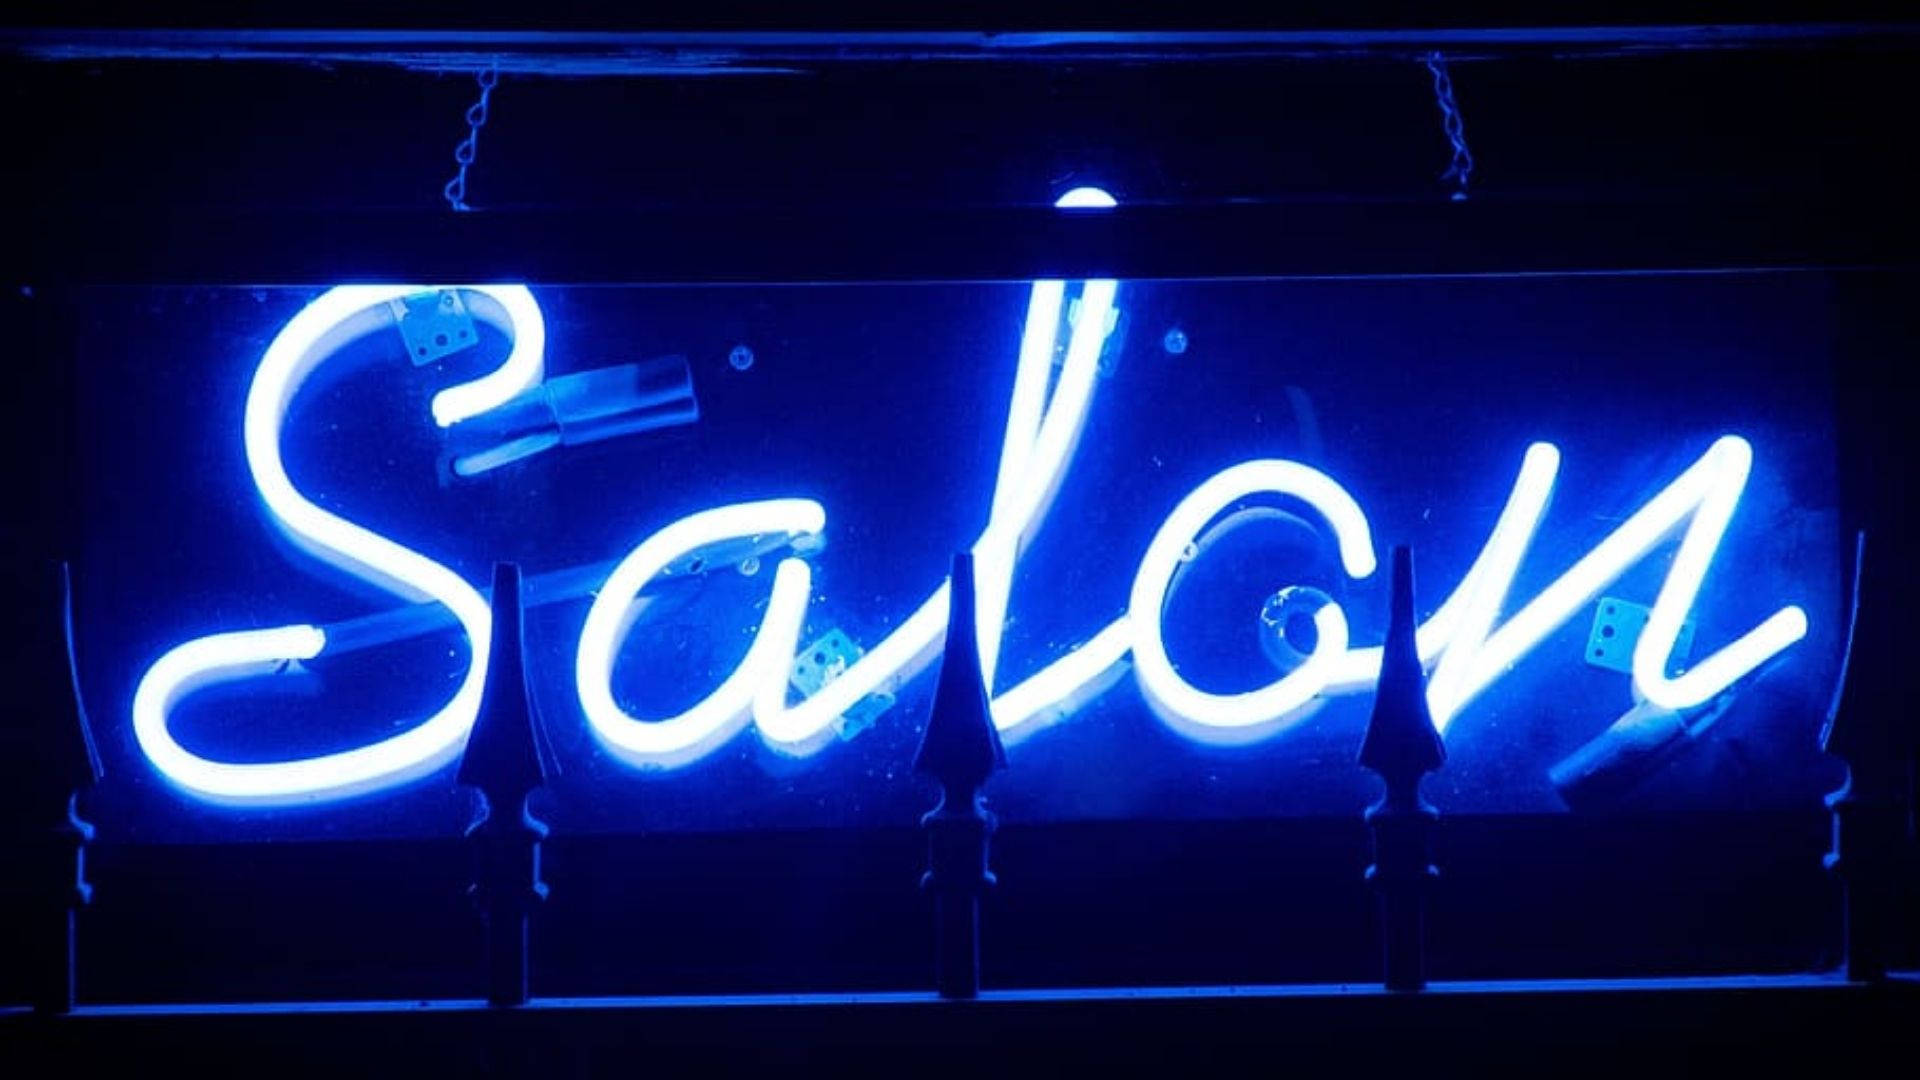 Neon Blue Led Salon Signage Background